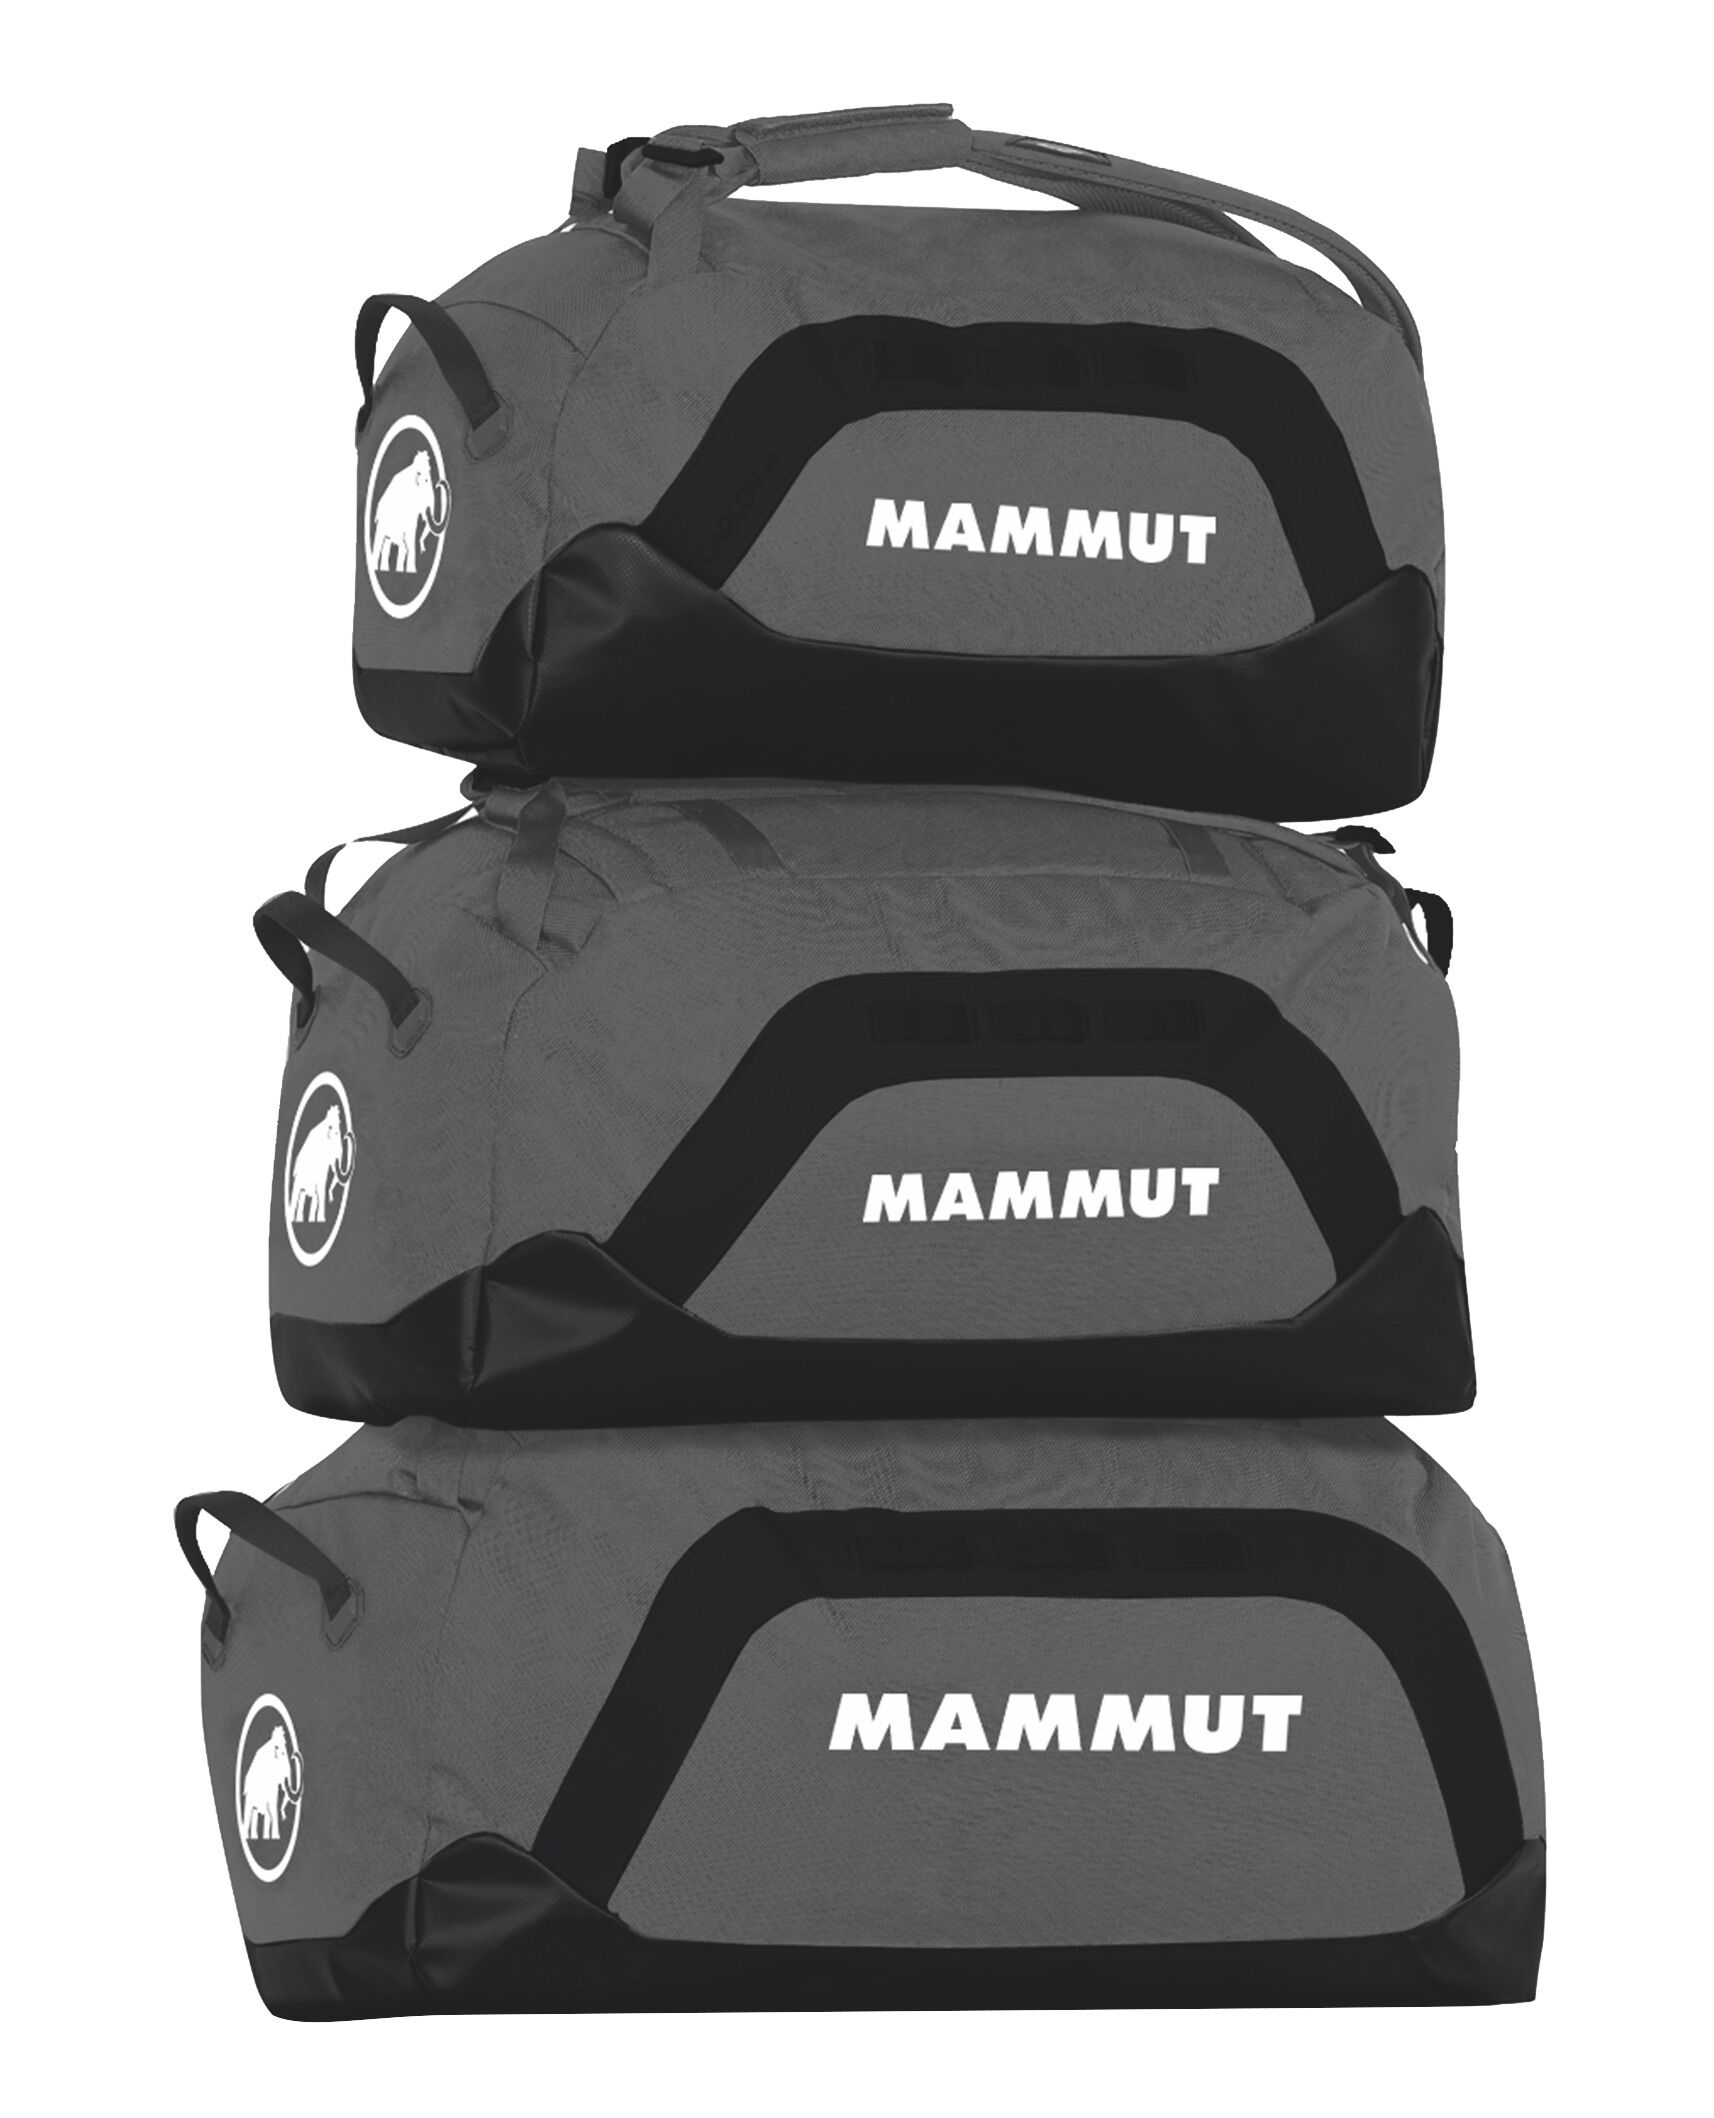 Mammut - Cargon - 60 L - Luggage